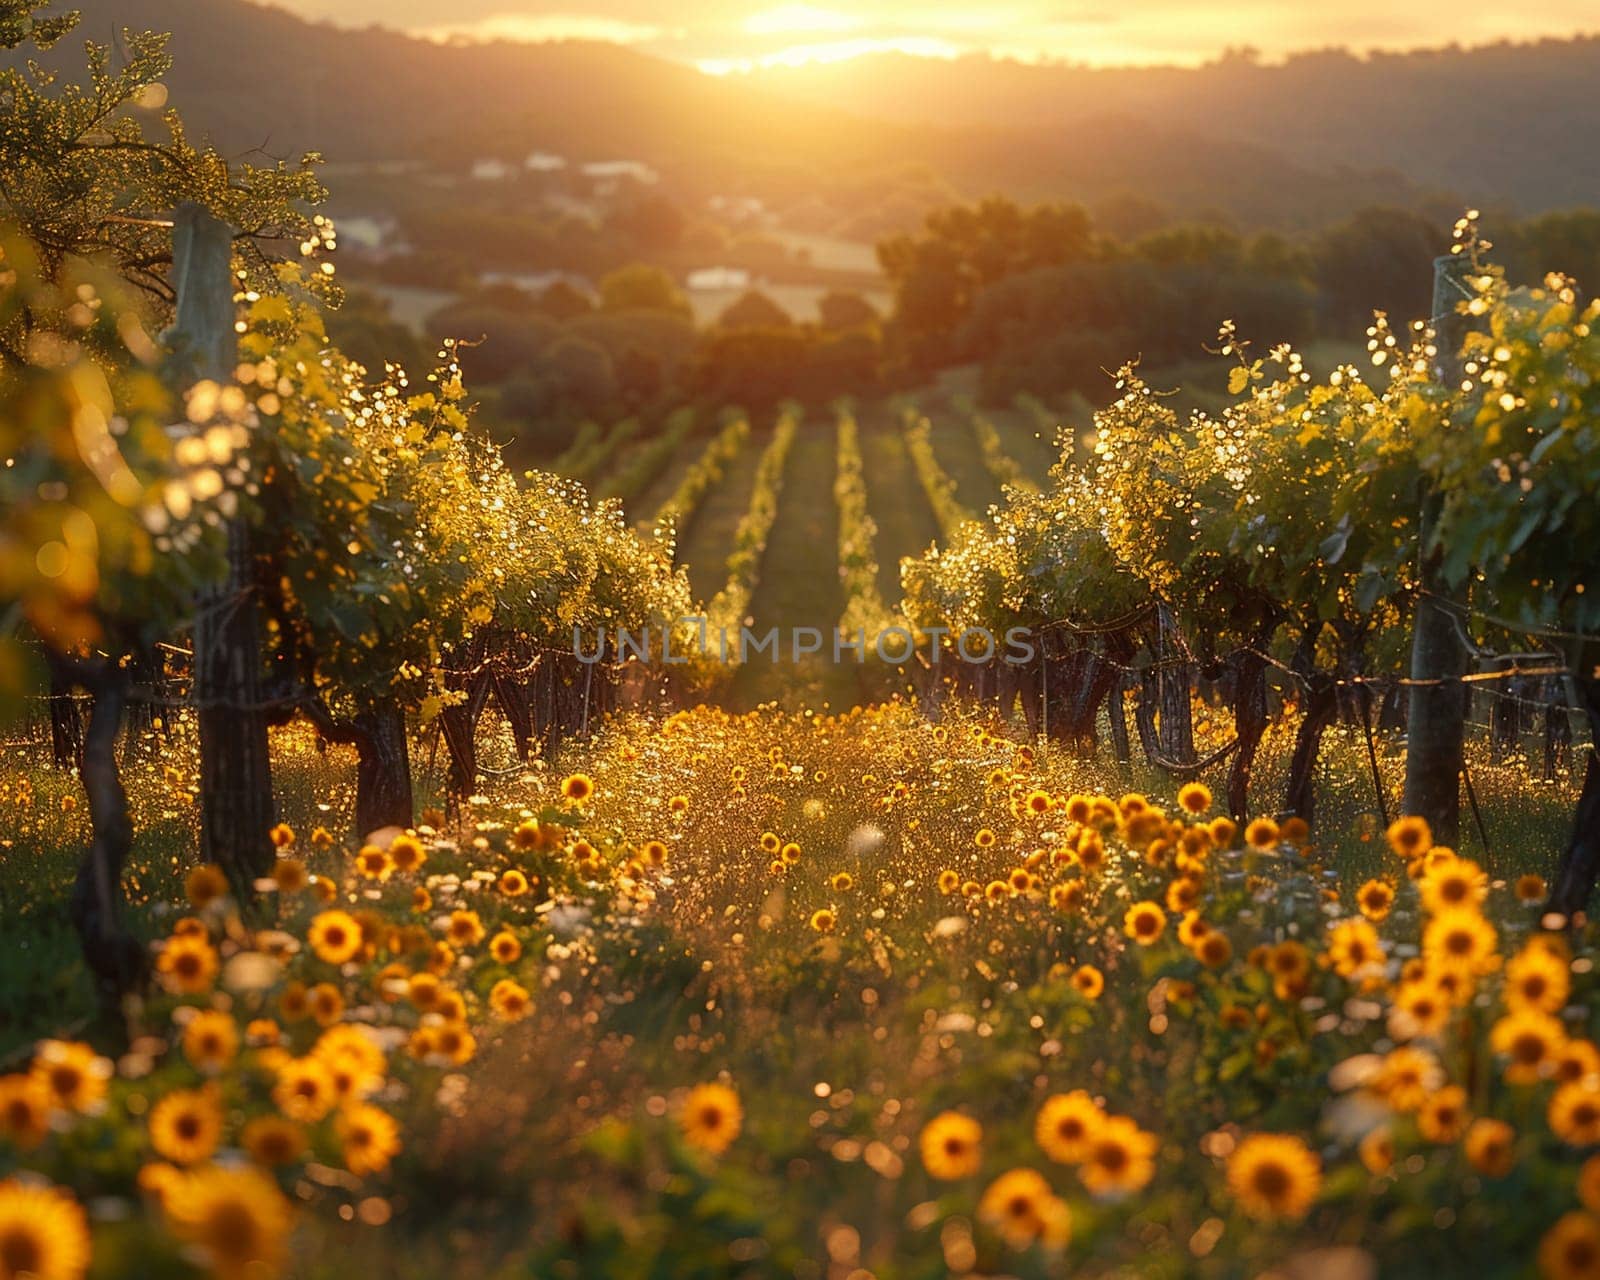 Golden hour sunlight filtering through a vineyard by Benzoix